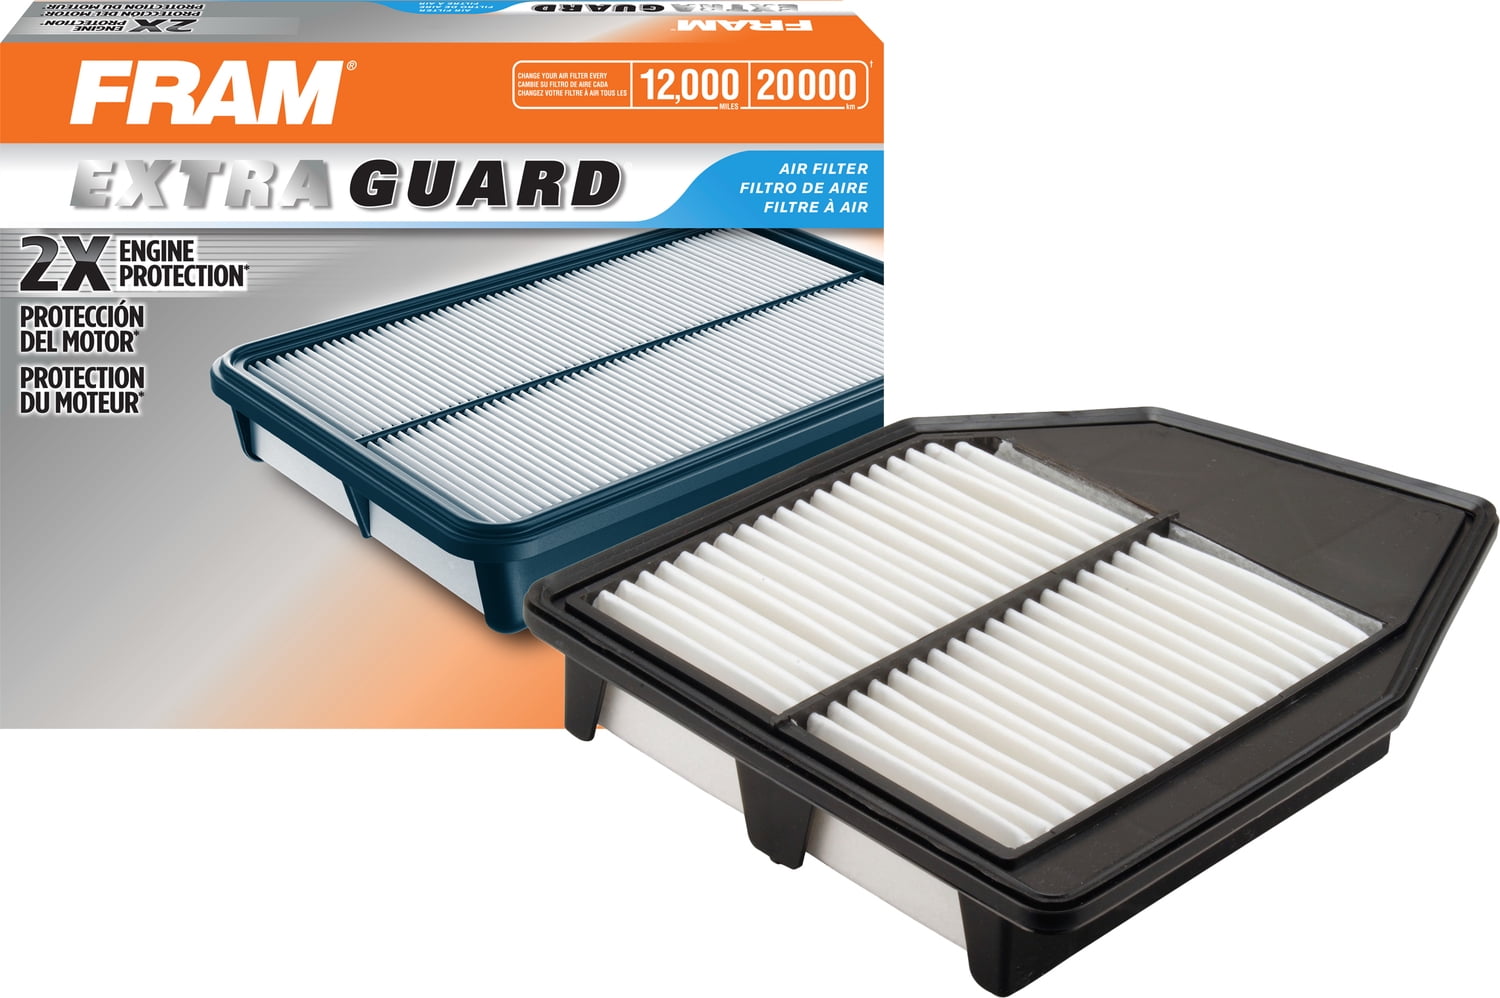 FRAM CA4303 Extra Guard Rigid Panel Air Filter